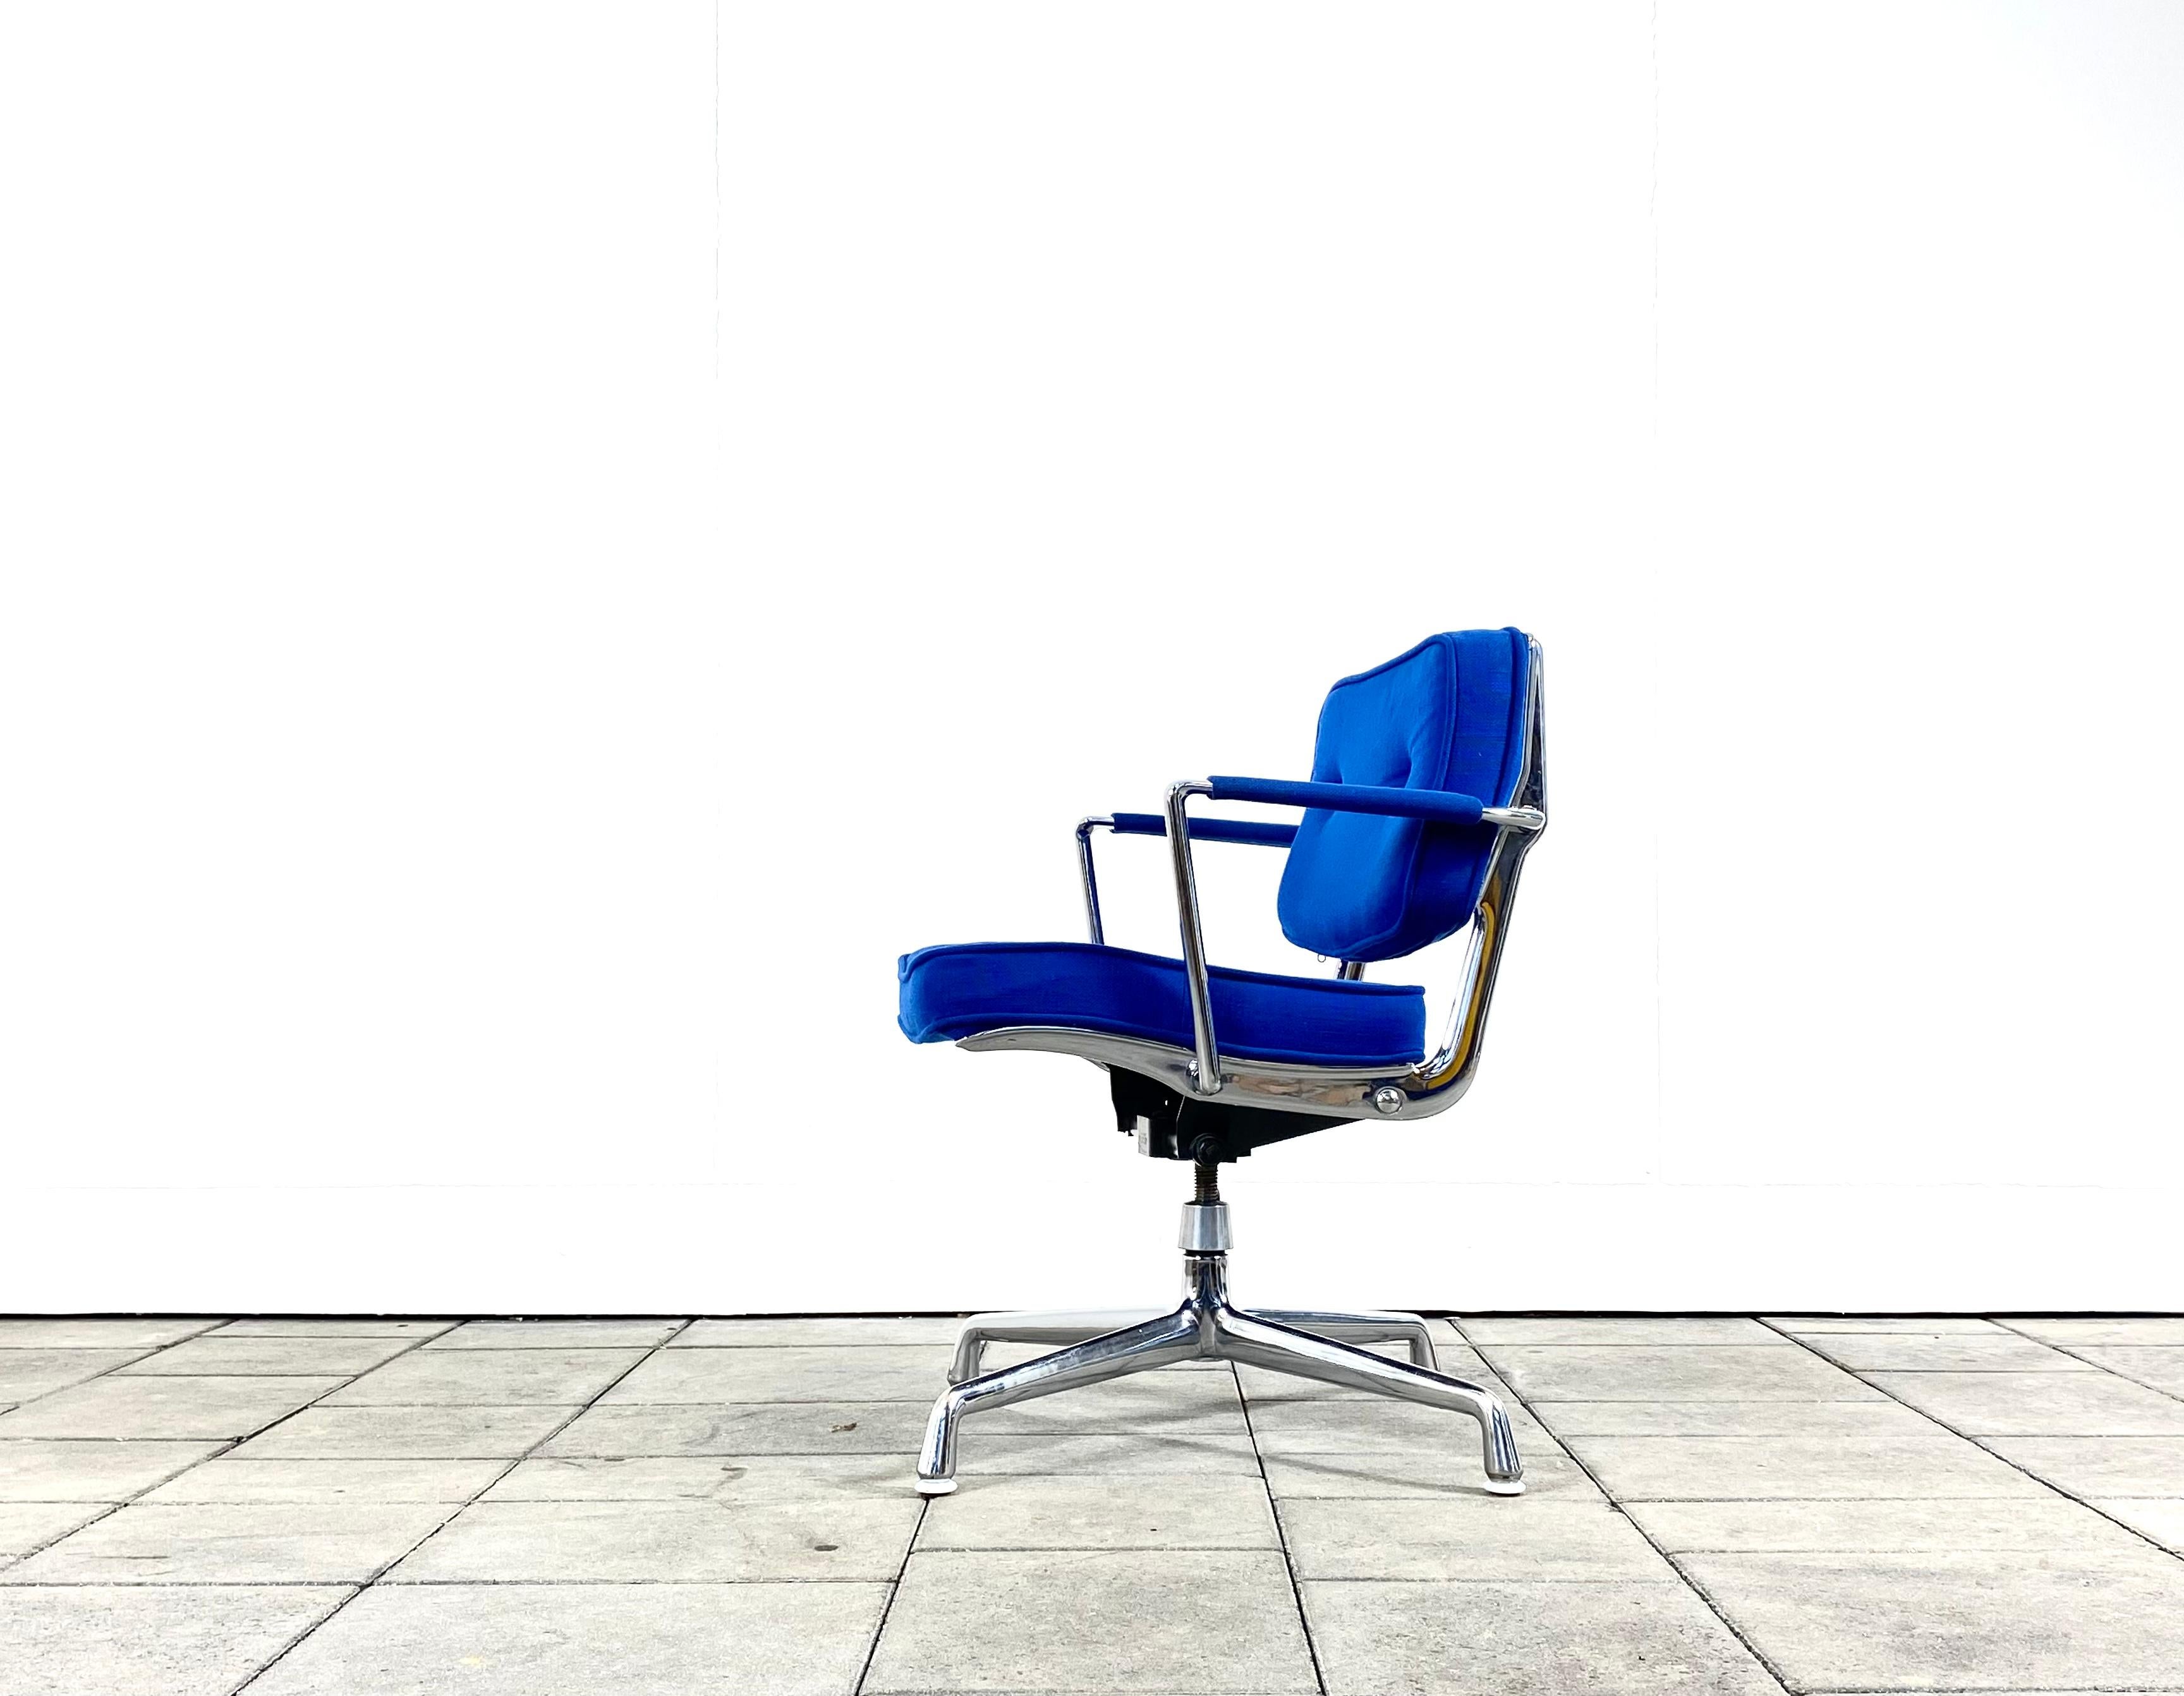 seltener Herman Miller ES102 Intermediate Desk Stuhl entworfen von Charles & Ray Eames

Polsterung in blauem Hopsack-Stoff, mit verchromten Aluminiumteilen, ausgestattet mit Dreh- und Kippfunktion, höhenverstellbar.

Der Stuhl ist in sehr gutem